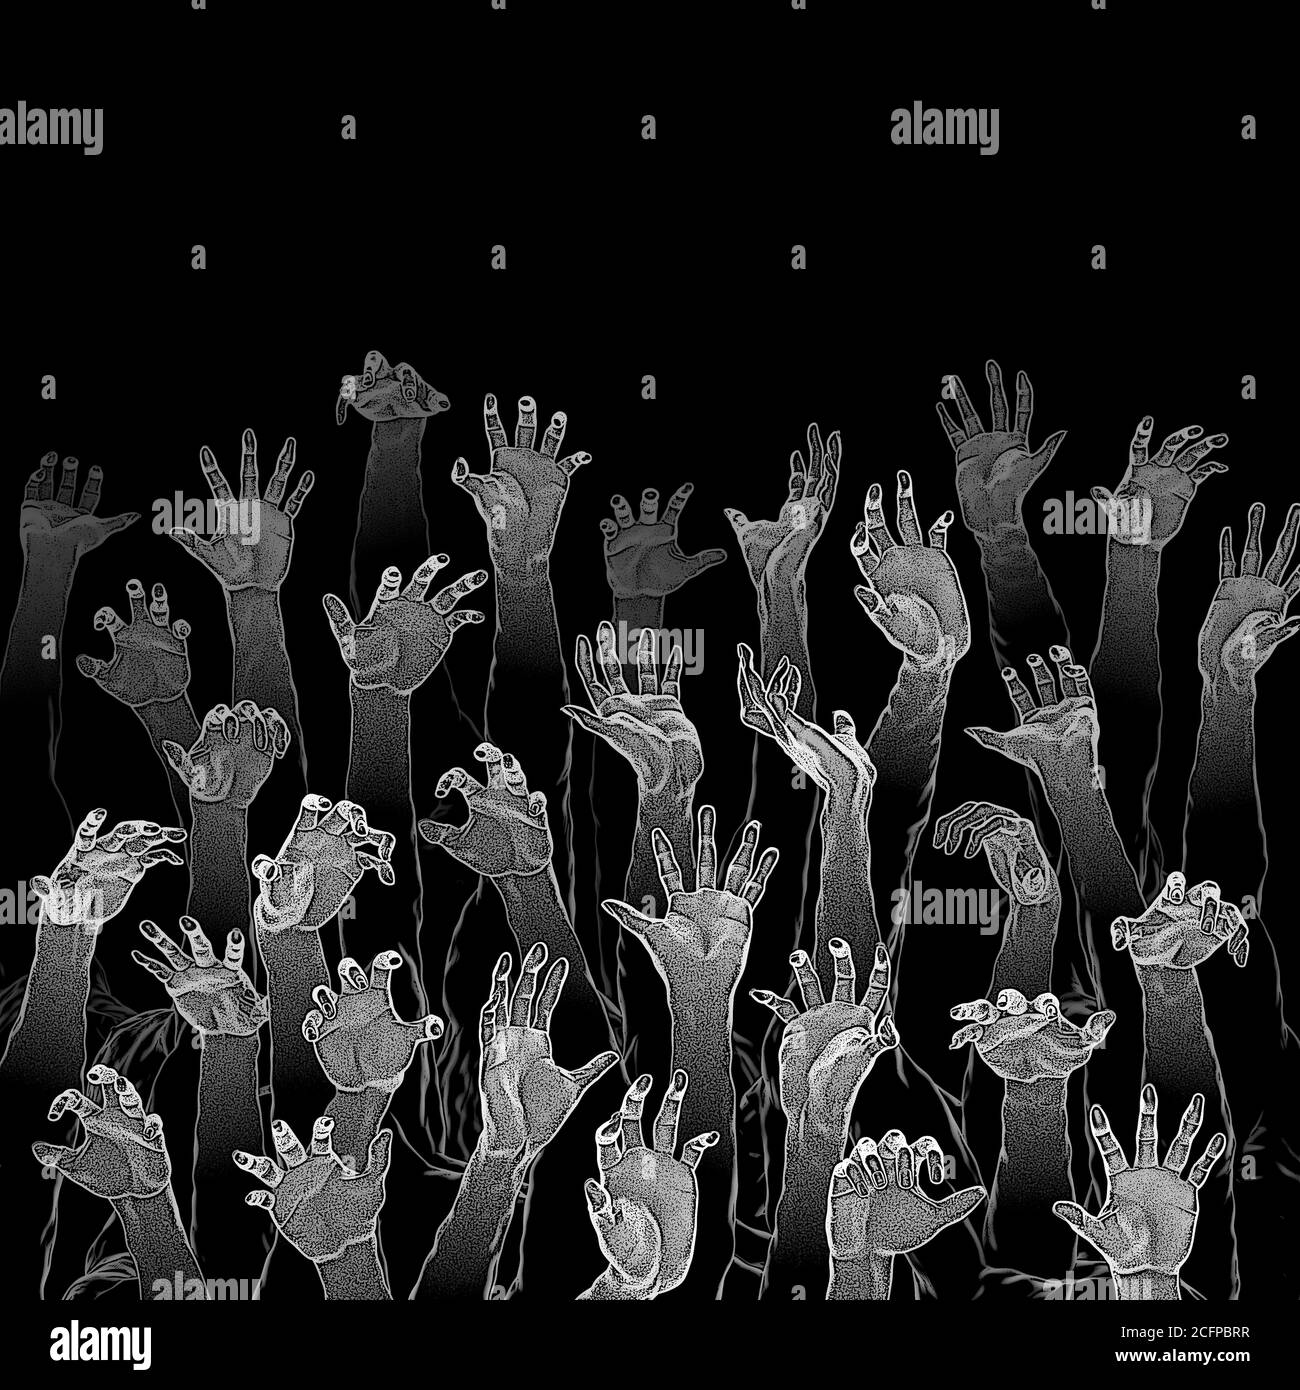 Zombie Horror Hände Halloween Skizze / 3D-Illustration von knorrigen Skizzierte untote Hände, die durch die Dunkelheit hinaufreichen Stockfoto